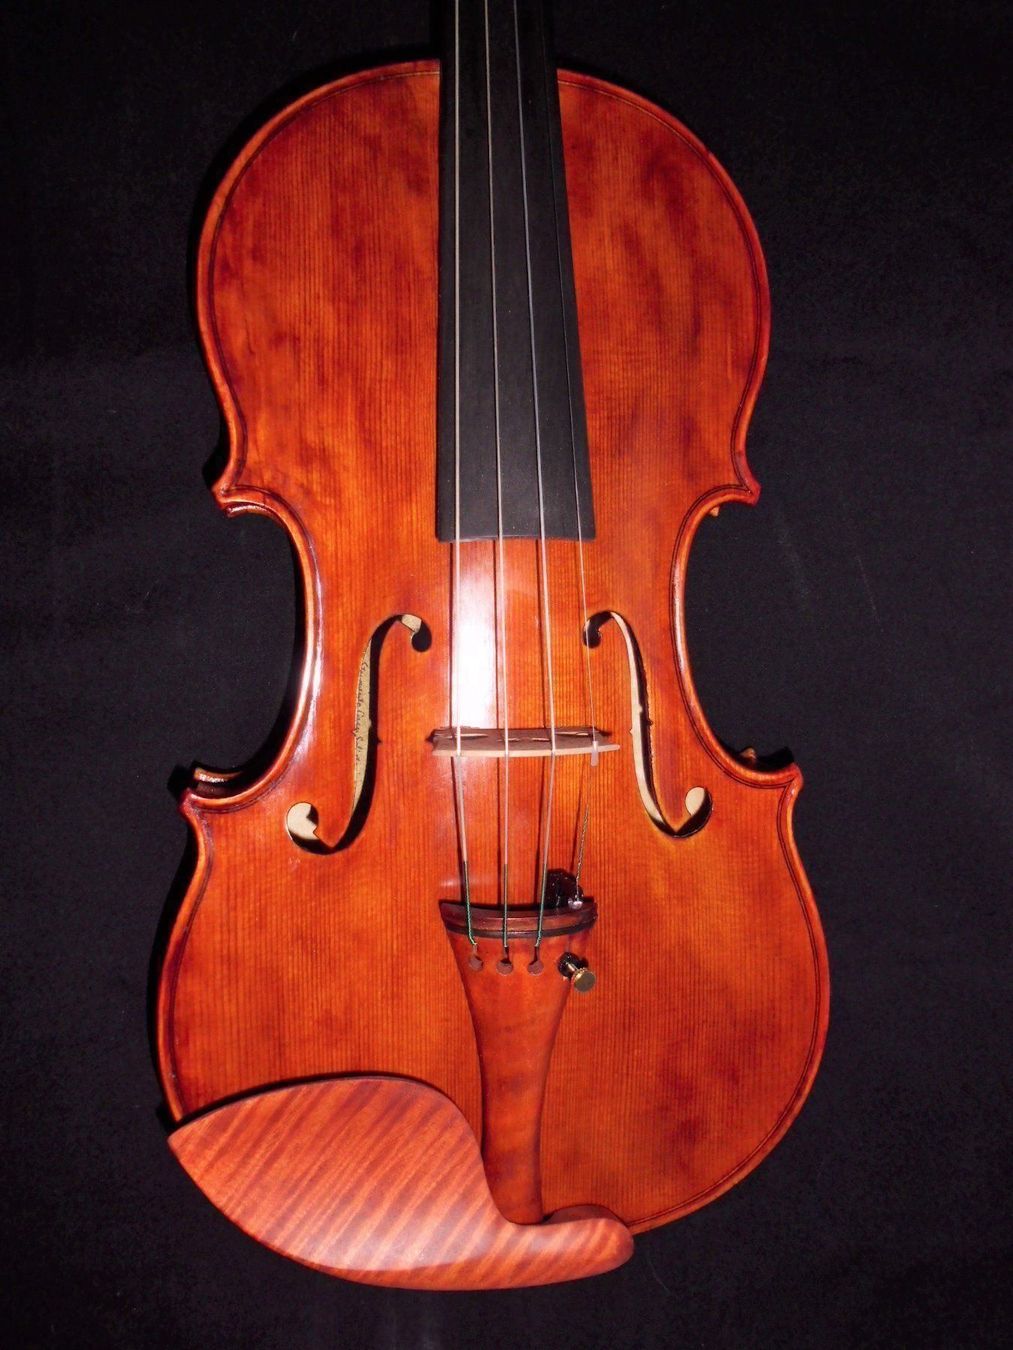 image-12562994-geige-violine-violon-dapres-italien-atelierdelviolino-d3d94.jpg